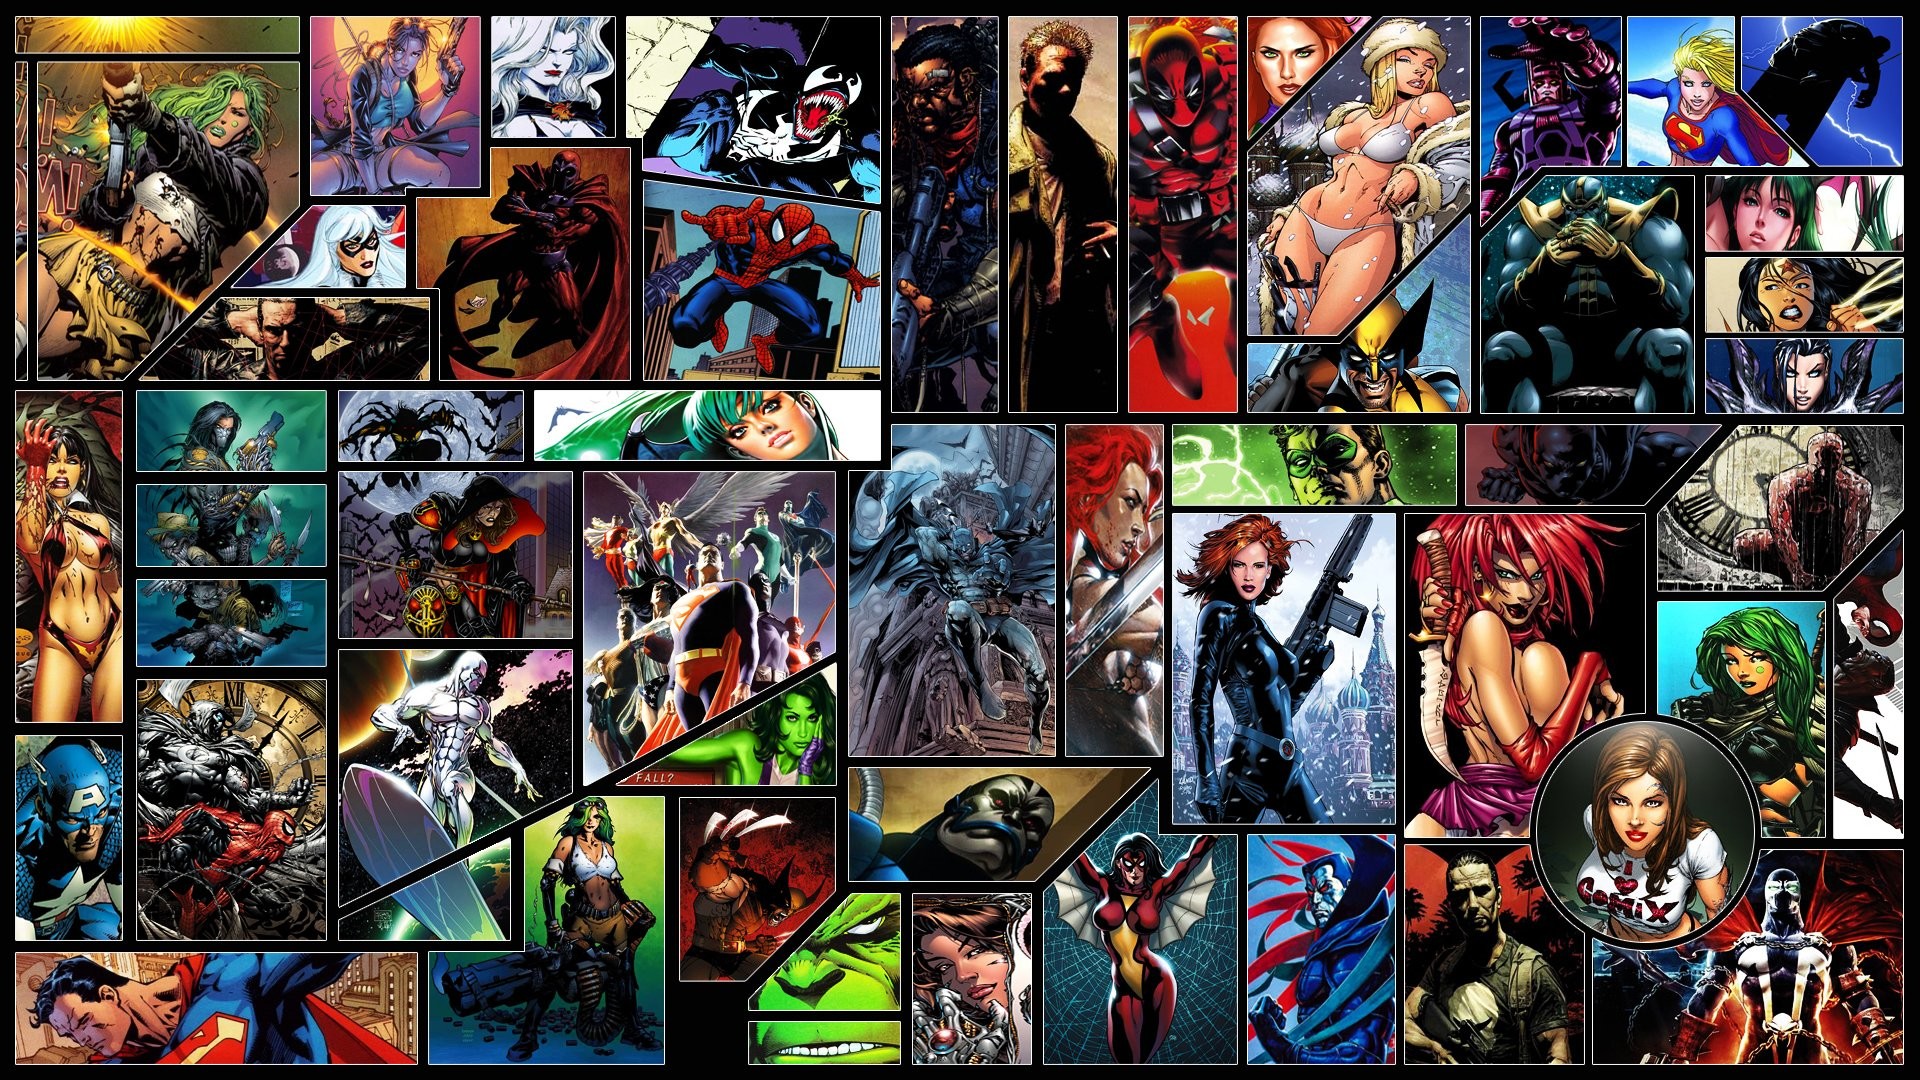 Marvel's Spider-Man Wallpapers in Ultra HD | 4K - Gameranx